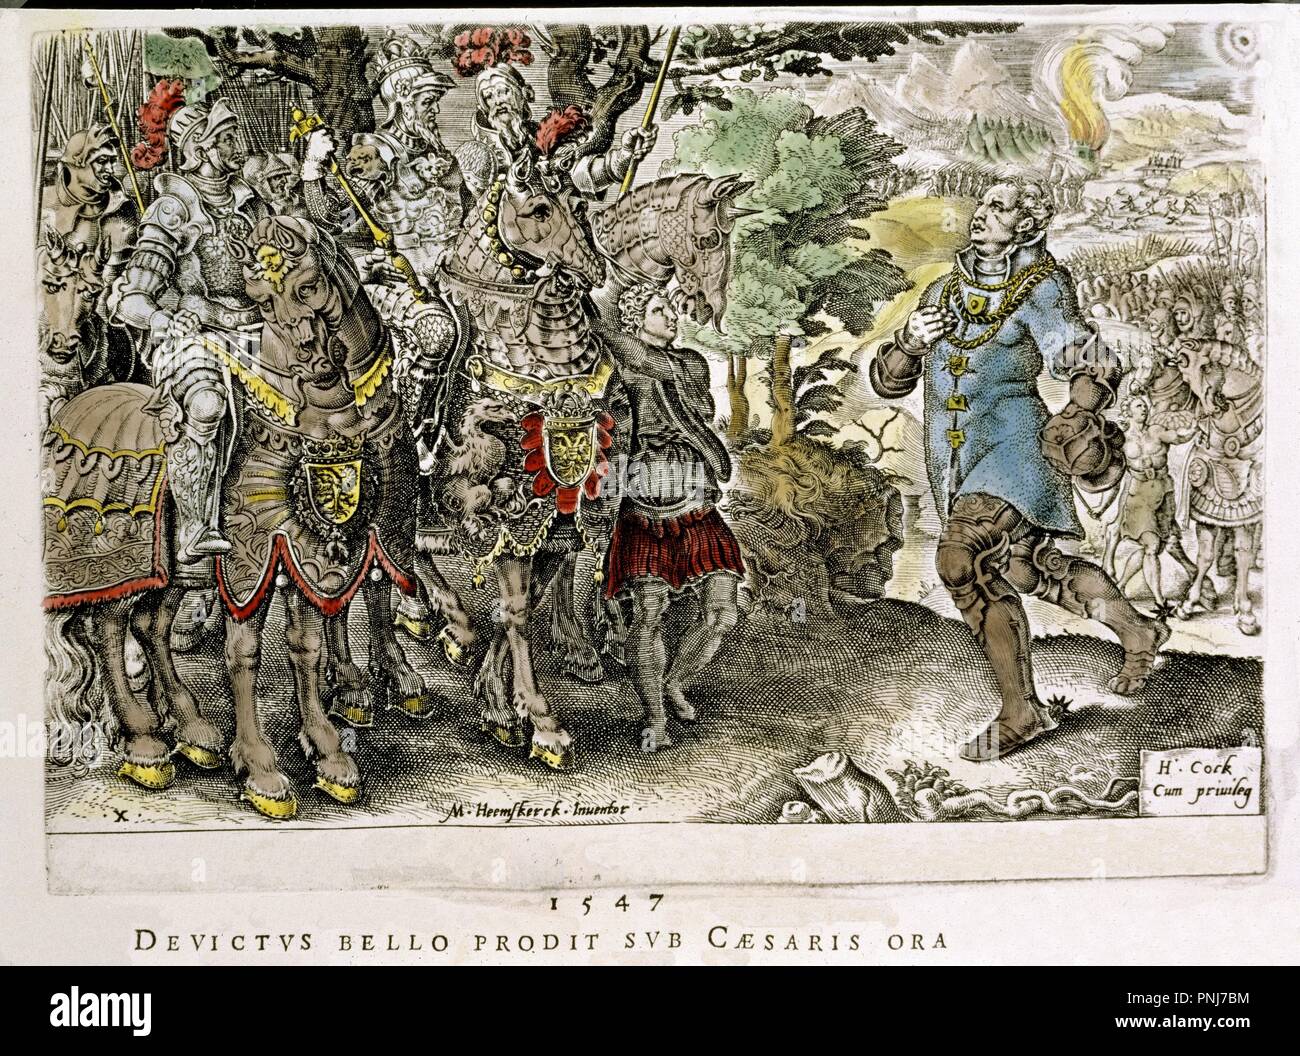 VICTORIAS DE CARLOS V - EL DUQUE DE SAJONIA DERROTADO Y PRESO TRAS LA BATALLA DE MUHLBERG - 1547. Autor: Martin van Heemskerck,. Ubicación: BIBLIOTECA NACIONAL DE COLECCION. MADRID. España. Foto de stock